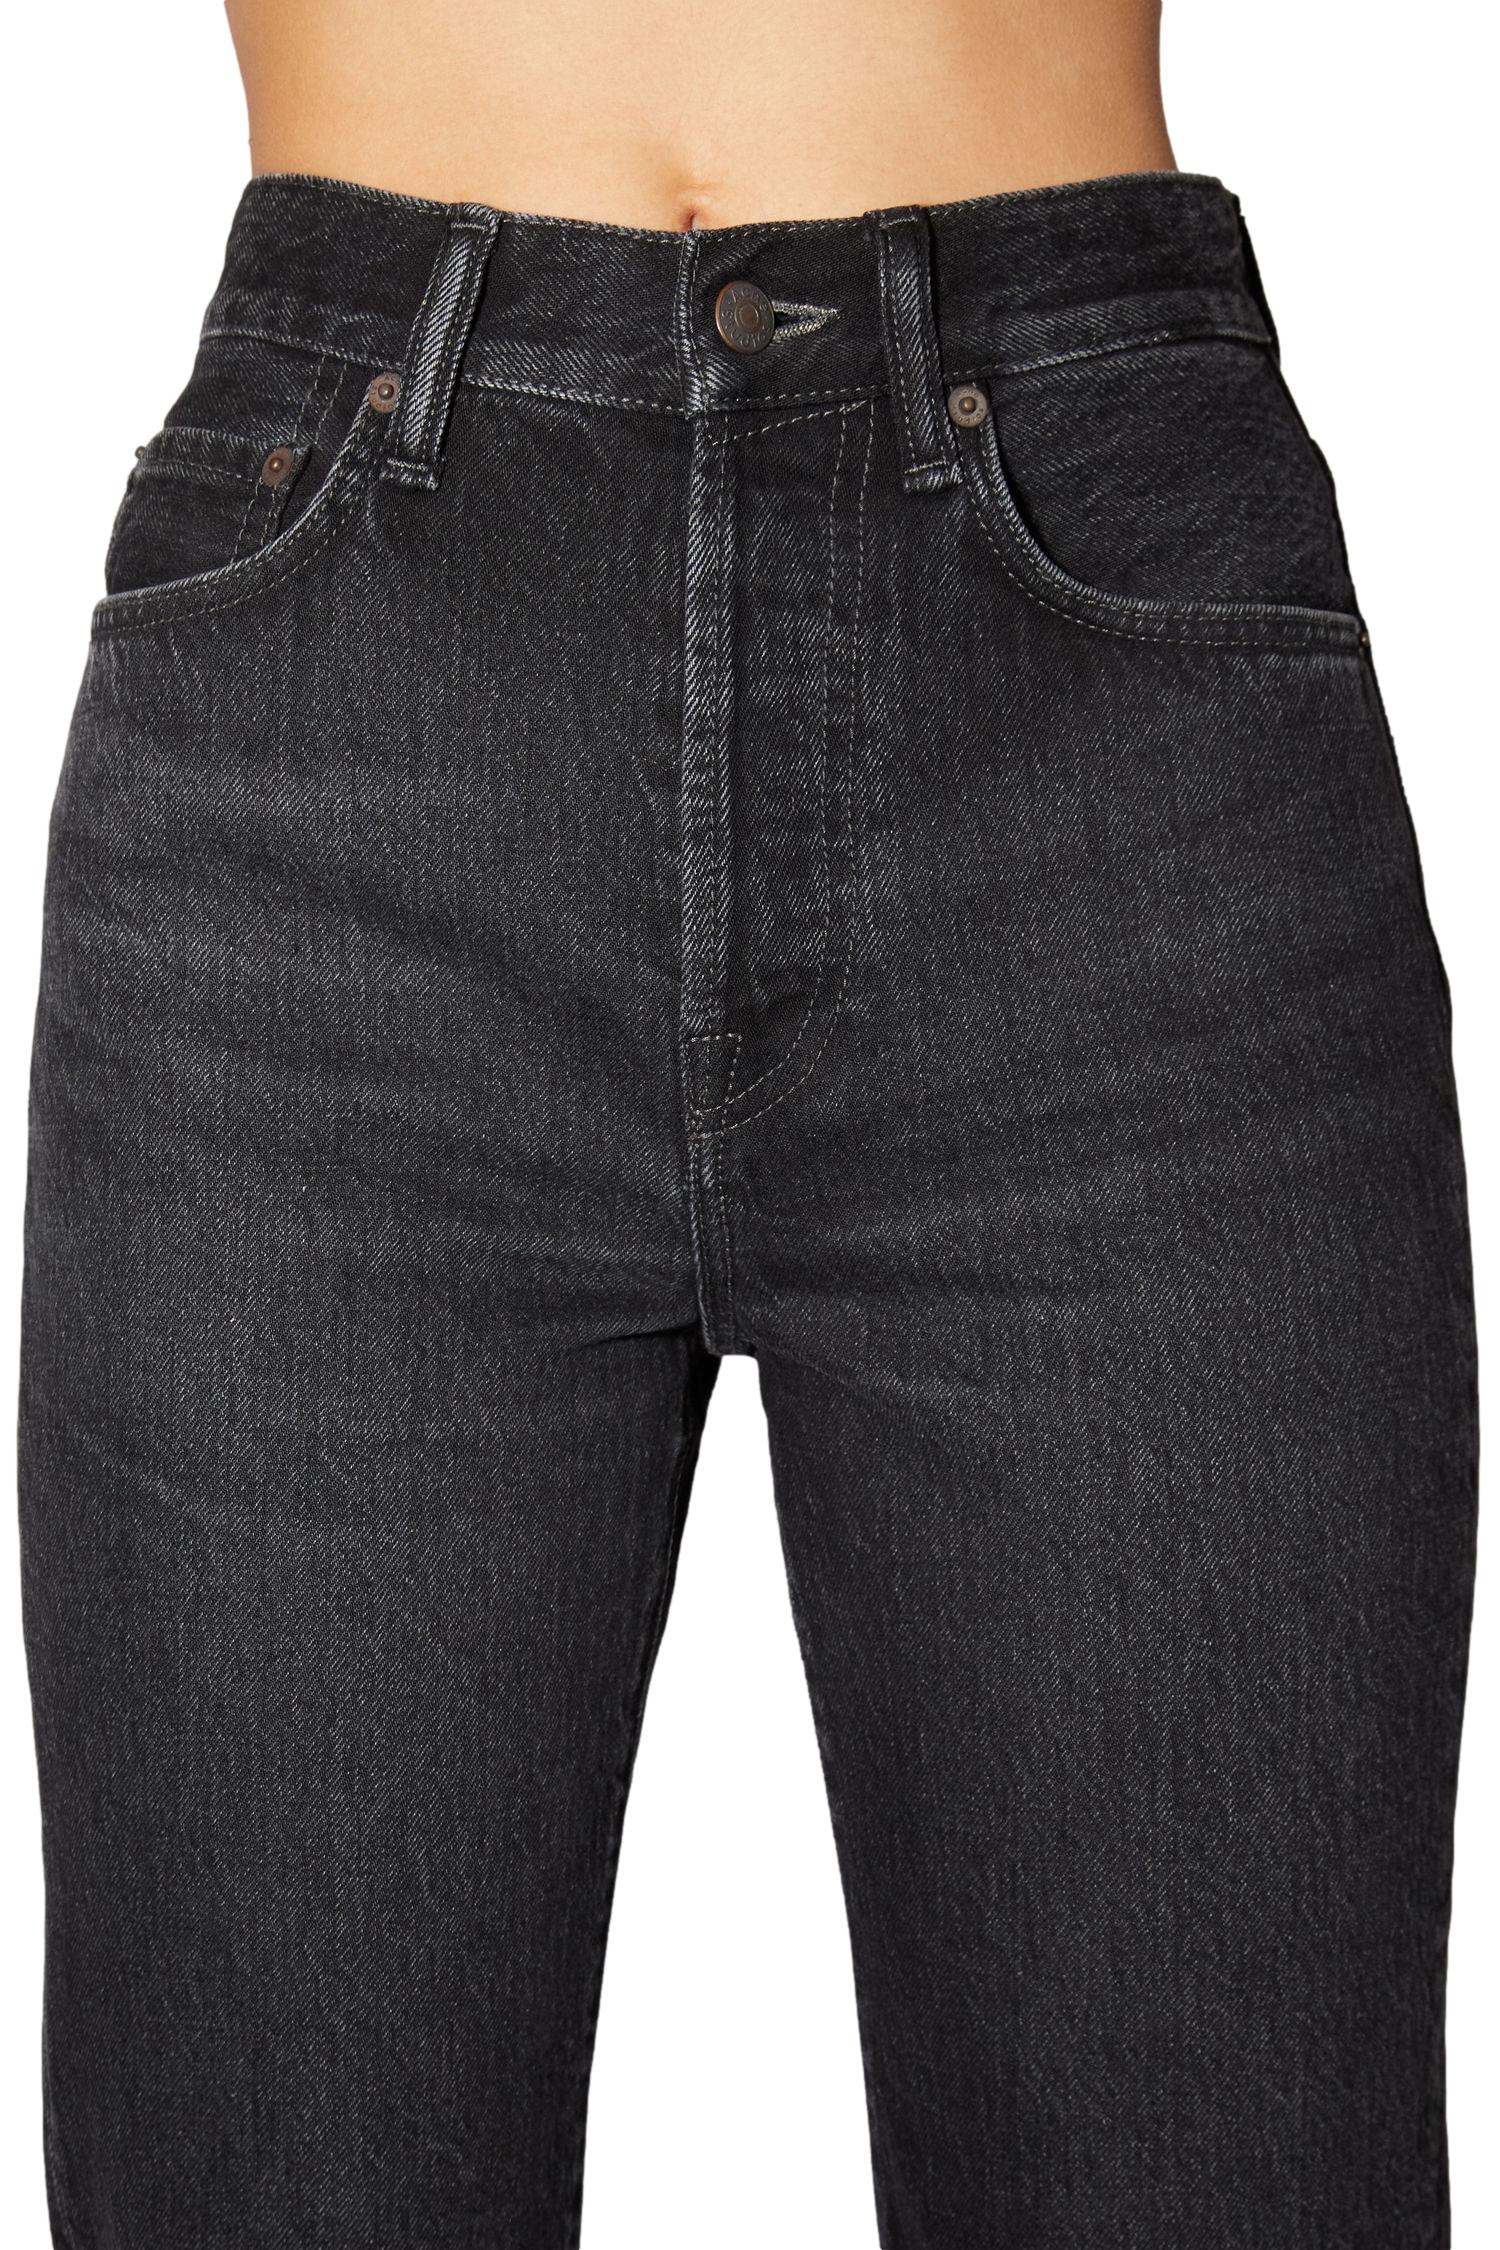 Acne Mece Vintage Black Jeans Vasket Sort - [shop.name]